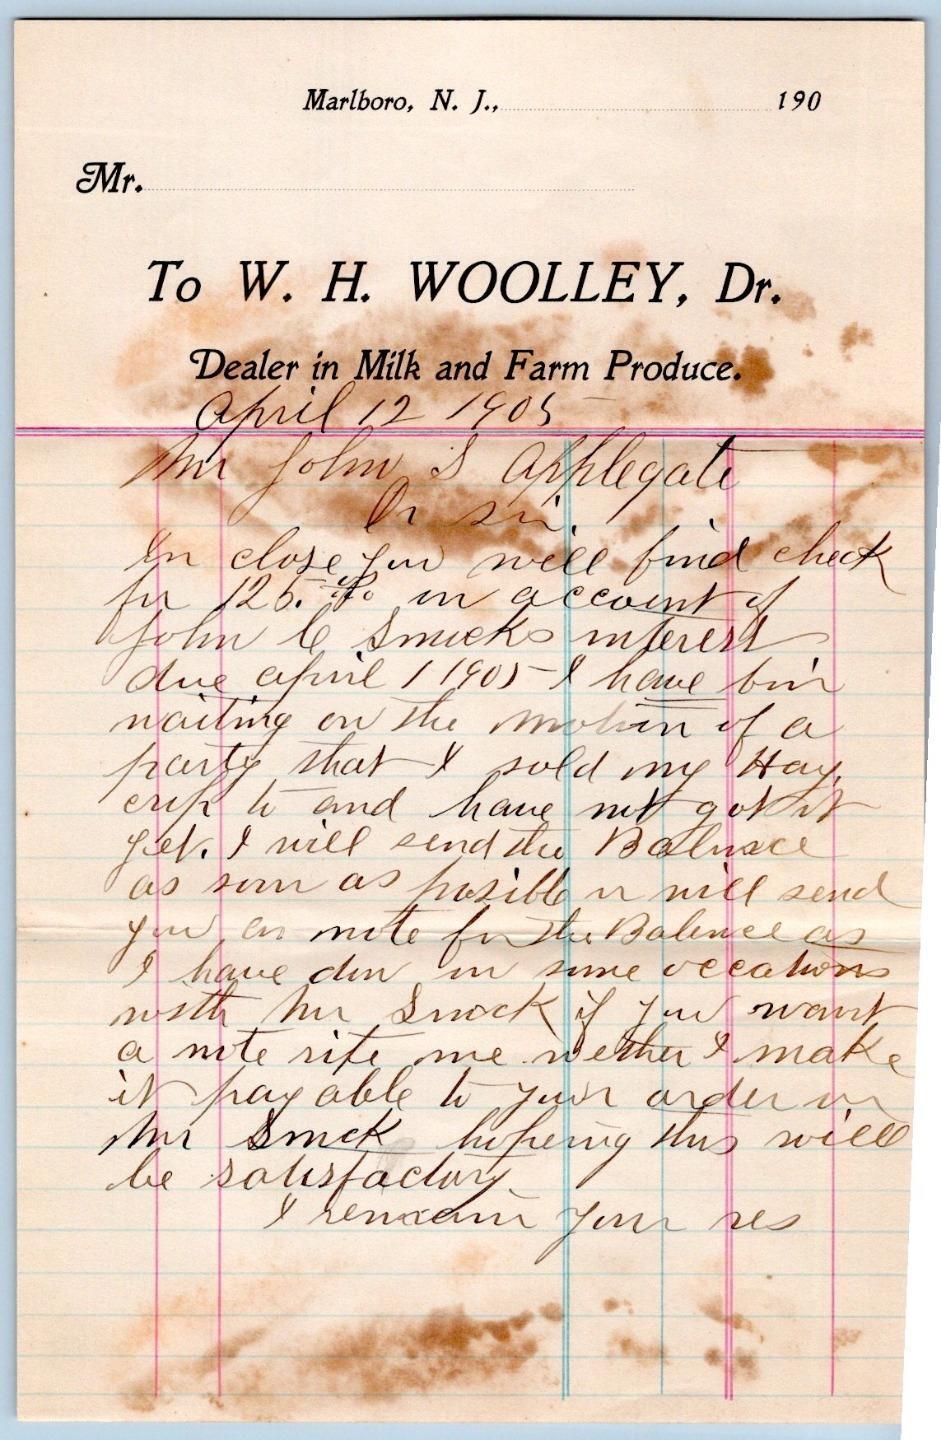 1905 MARLBORO NEW JERSEY*W H WOOLLEY*MILK & FARM PRODUCE DEALER*JOHN APPLEGATE